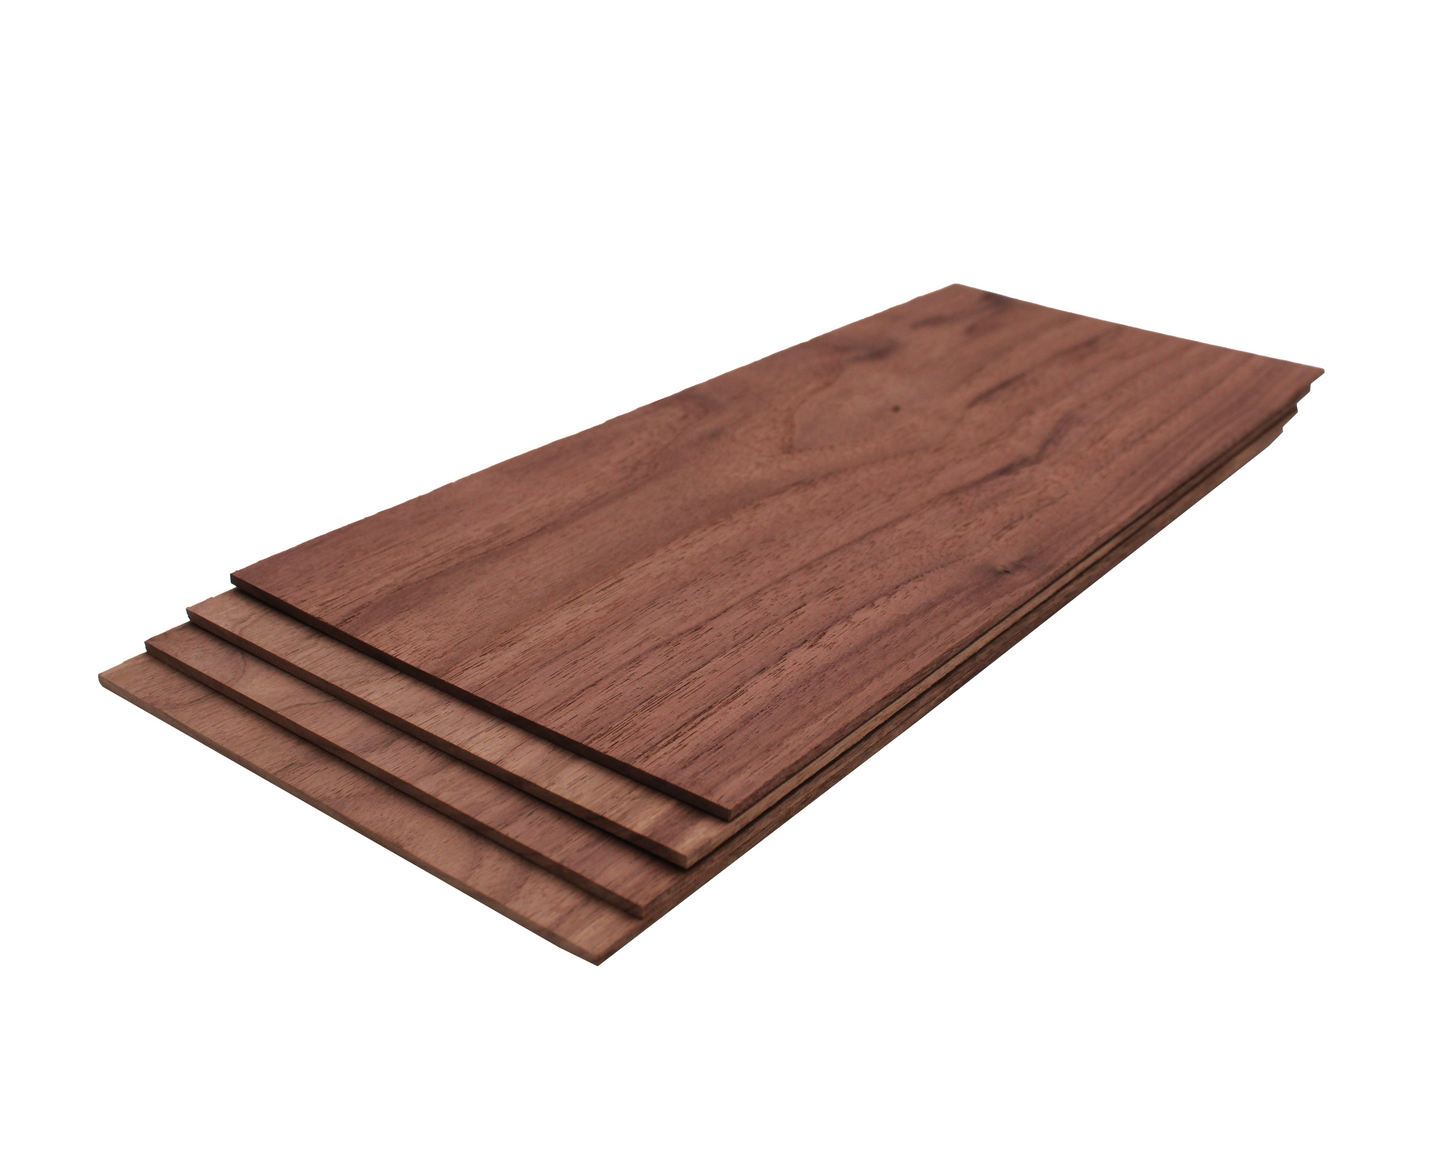 Walnut Thin Sawn Lumber 1/8" x 6 1/2"